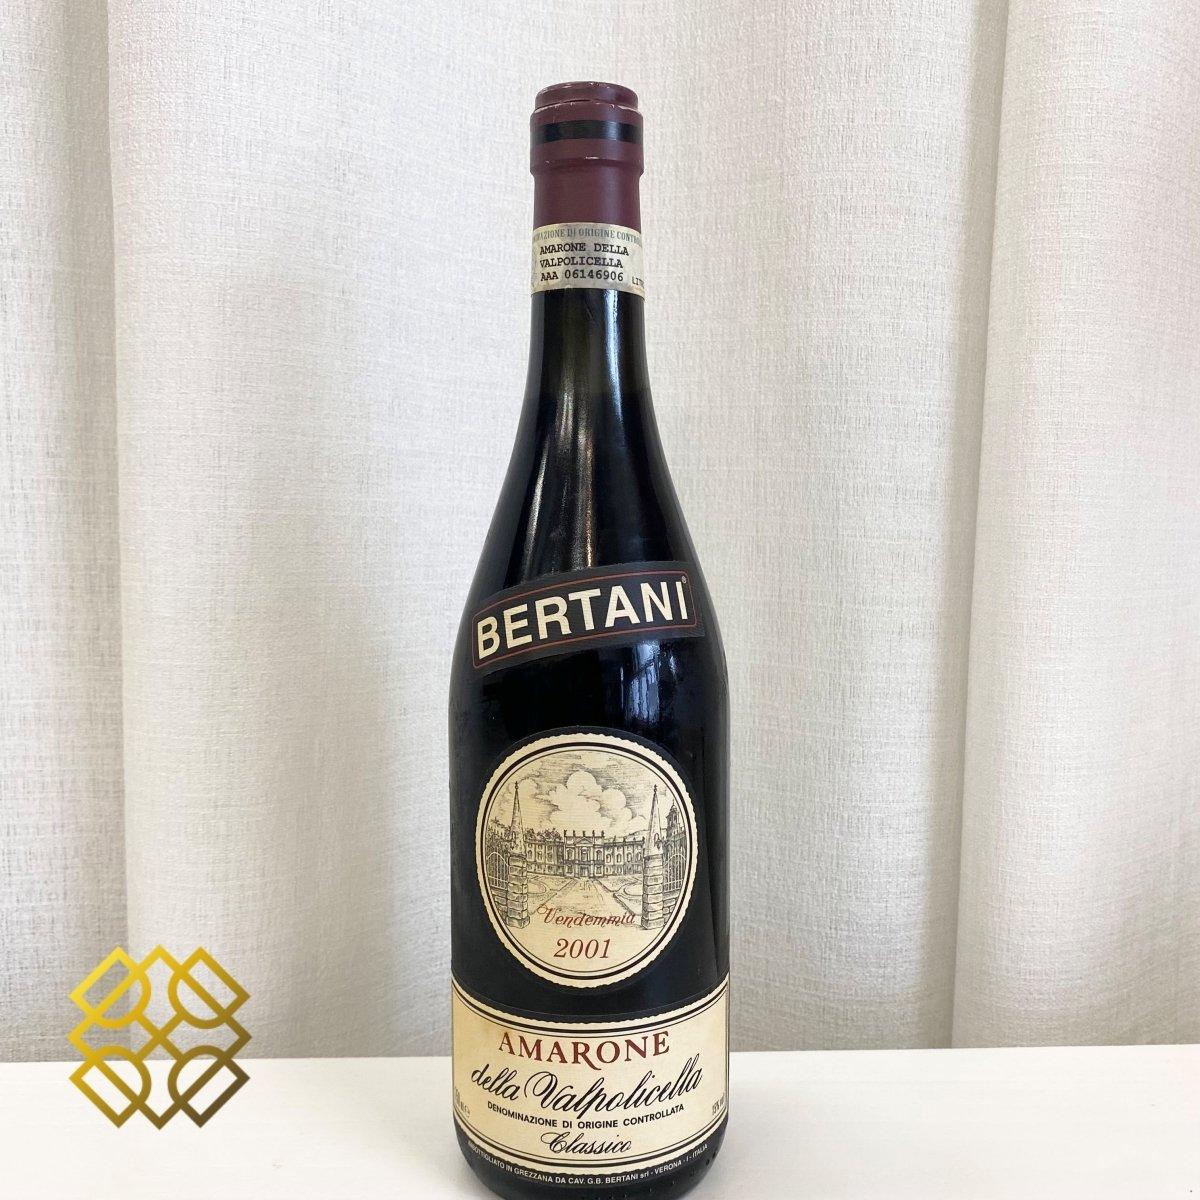 Bertani - Amarone della Valpolicella Classico 2001   Country : Italy (2)